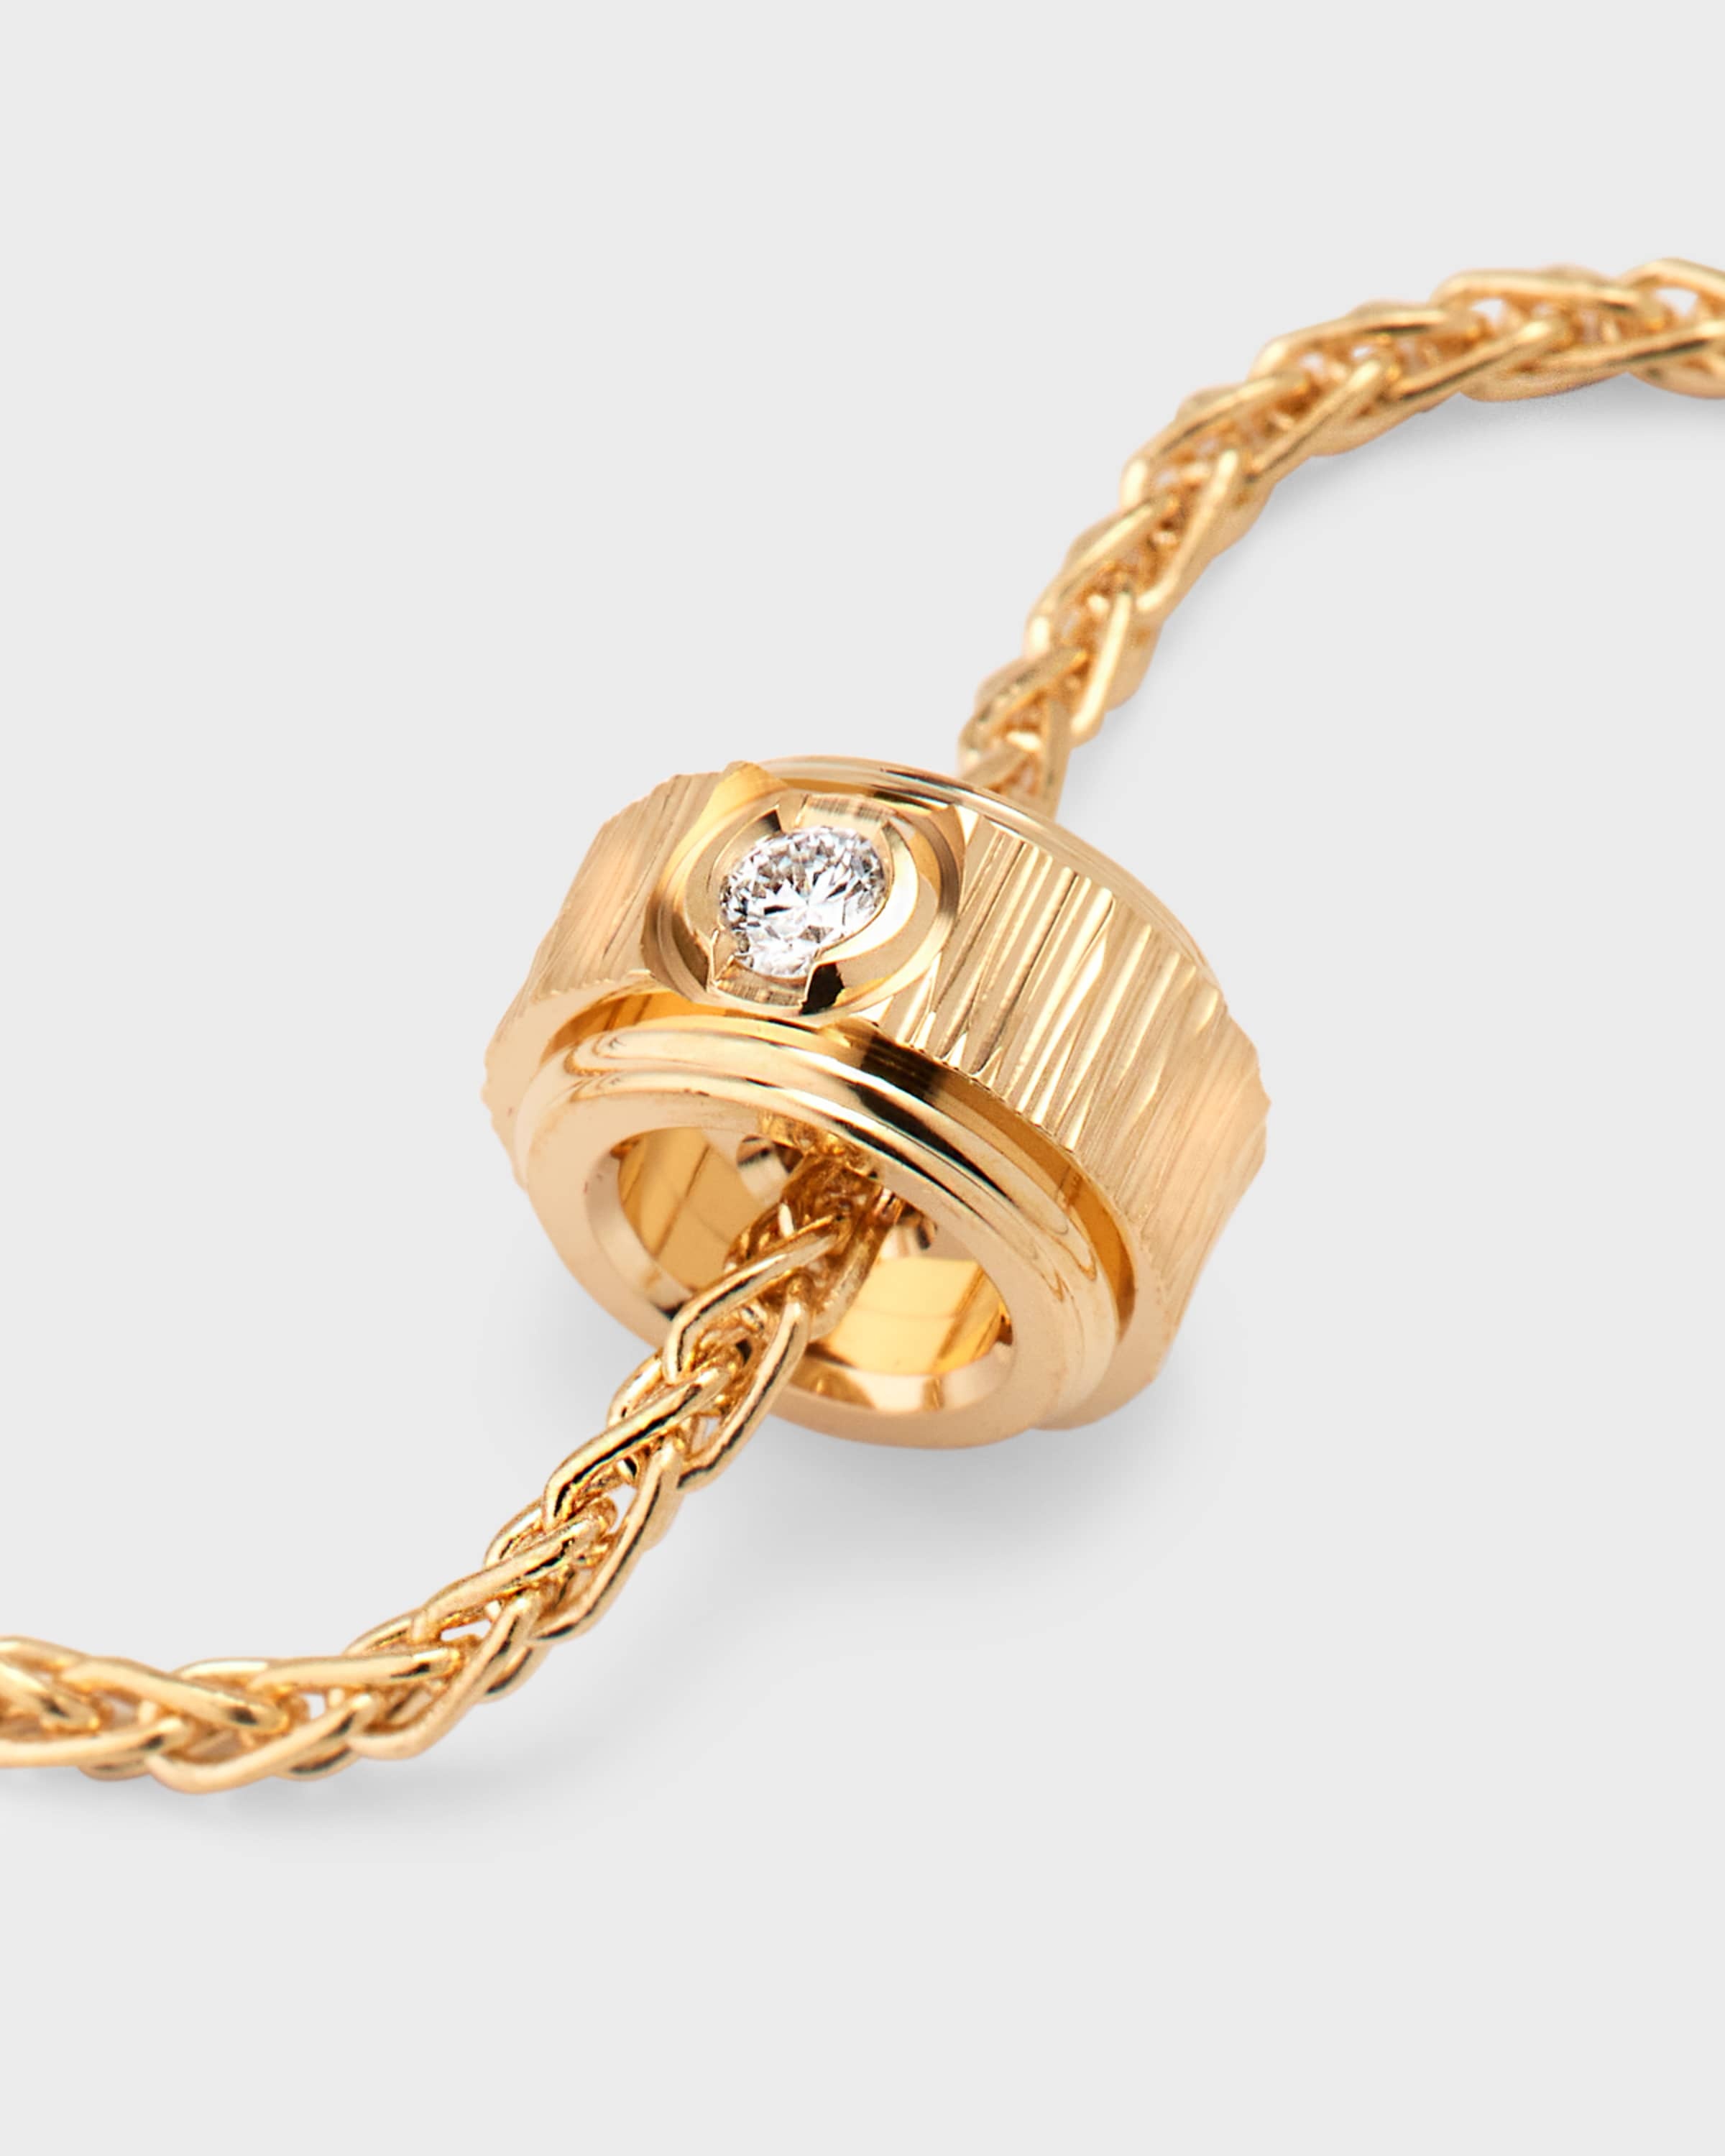 18K Pink Gold Possession Decor Palace Soft Bracelet with Single Diamond - 4